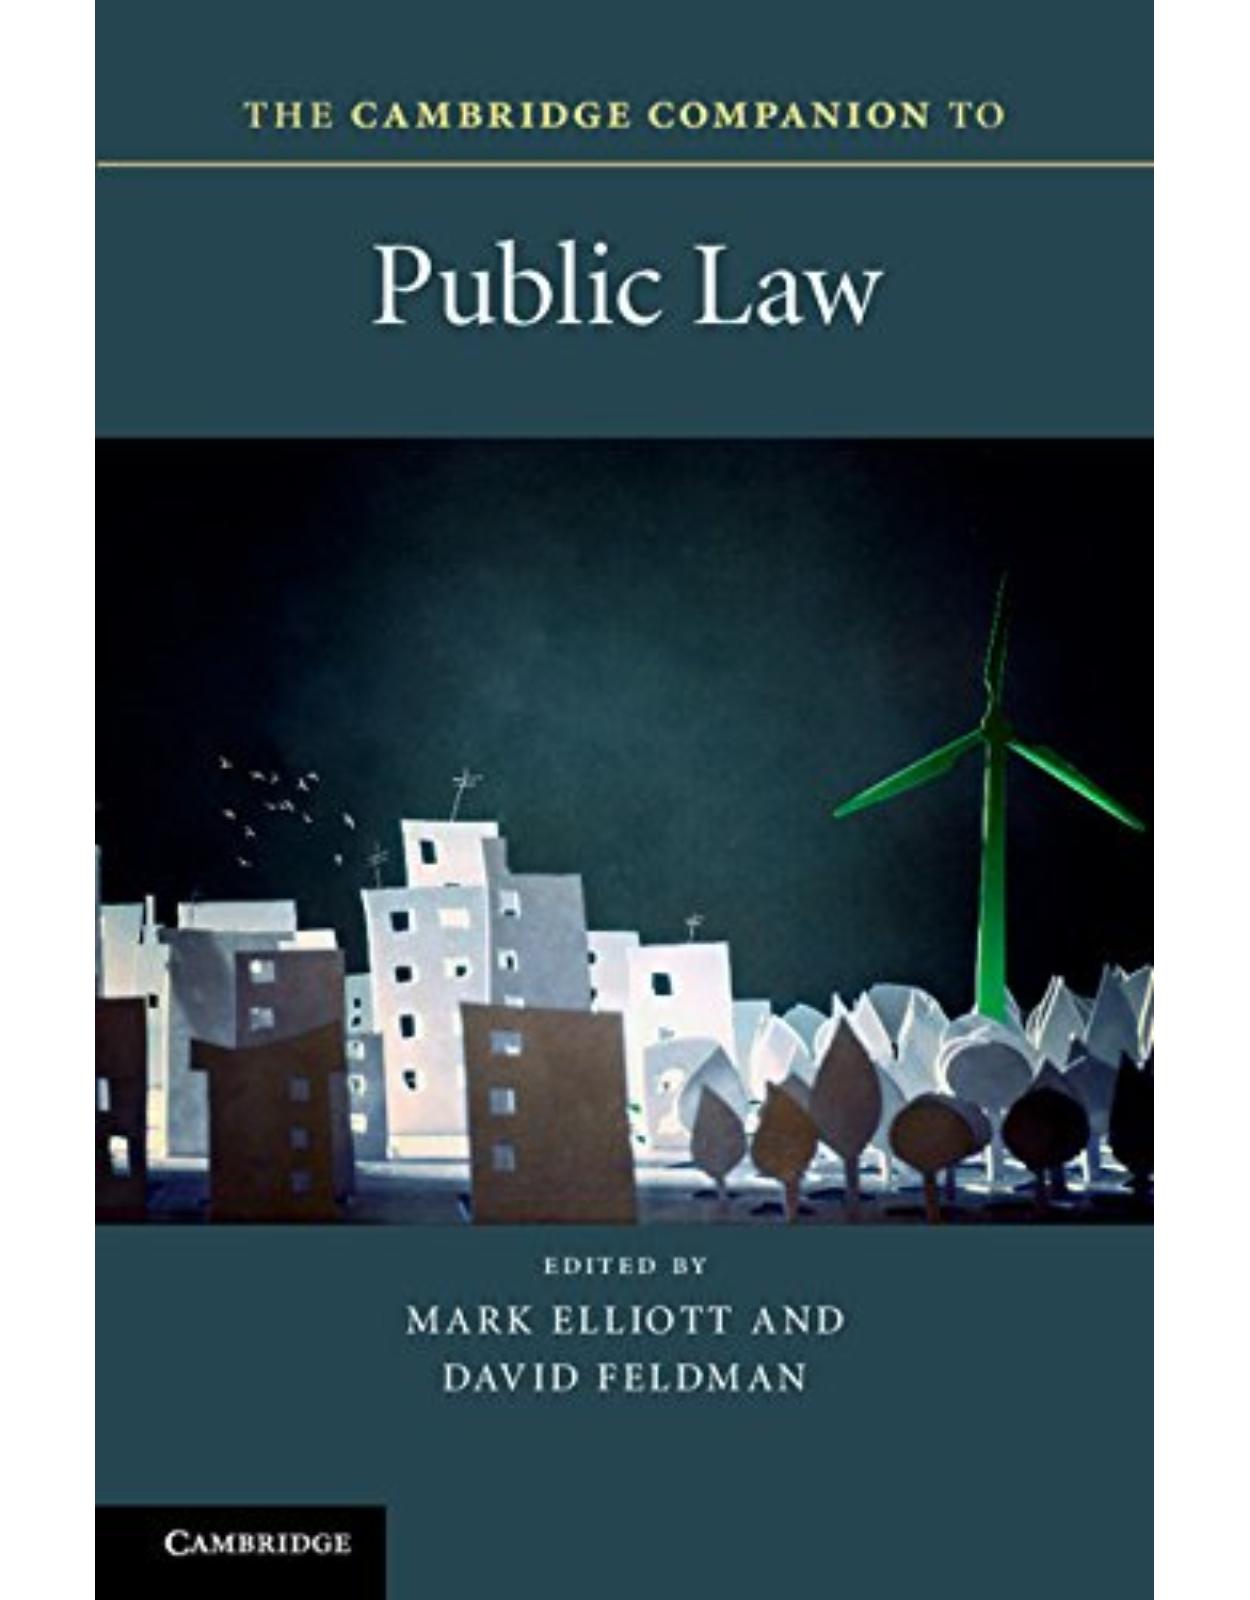 The Cambridge Companion to Public Law (Cambridge Companions to Law)